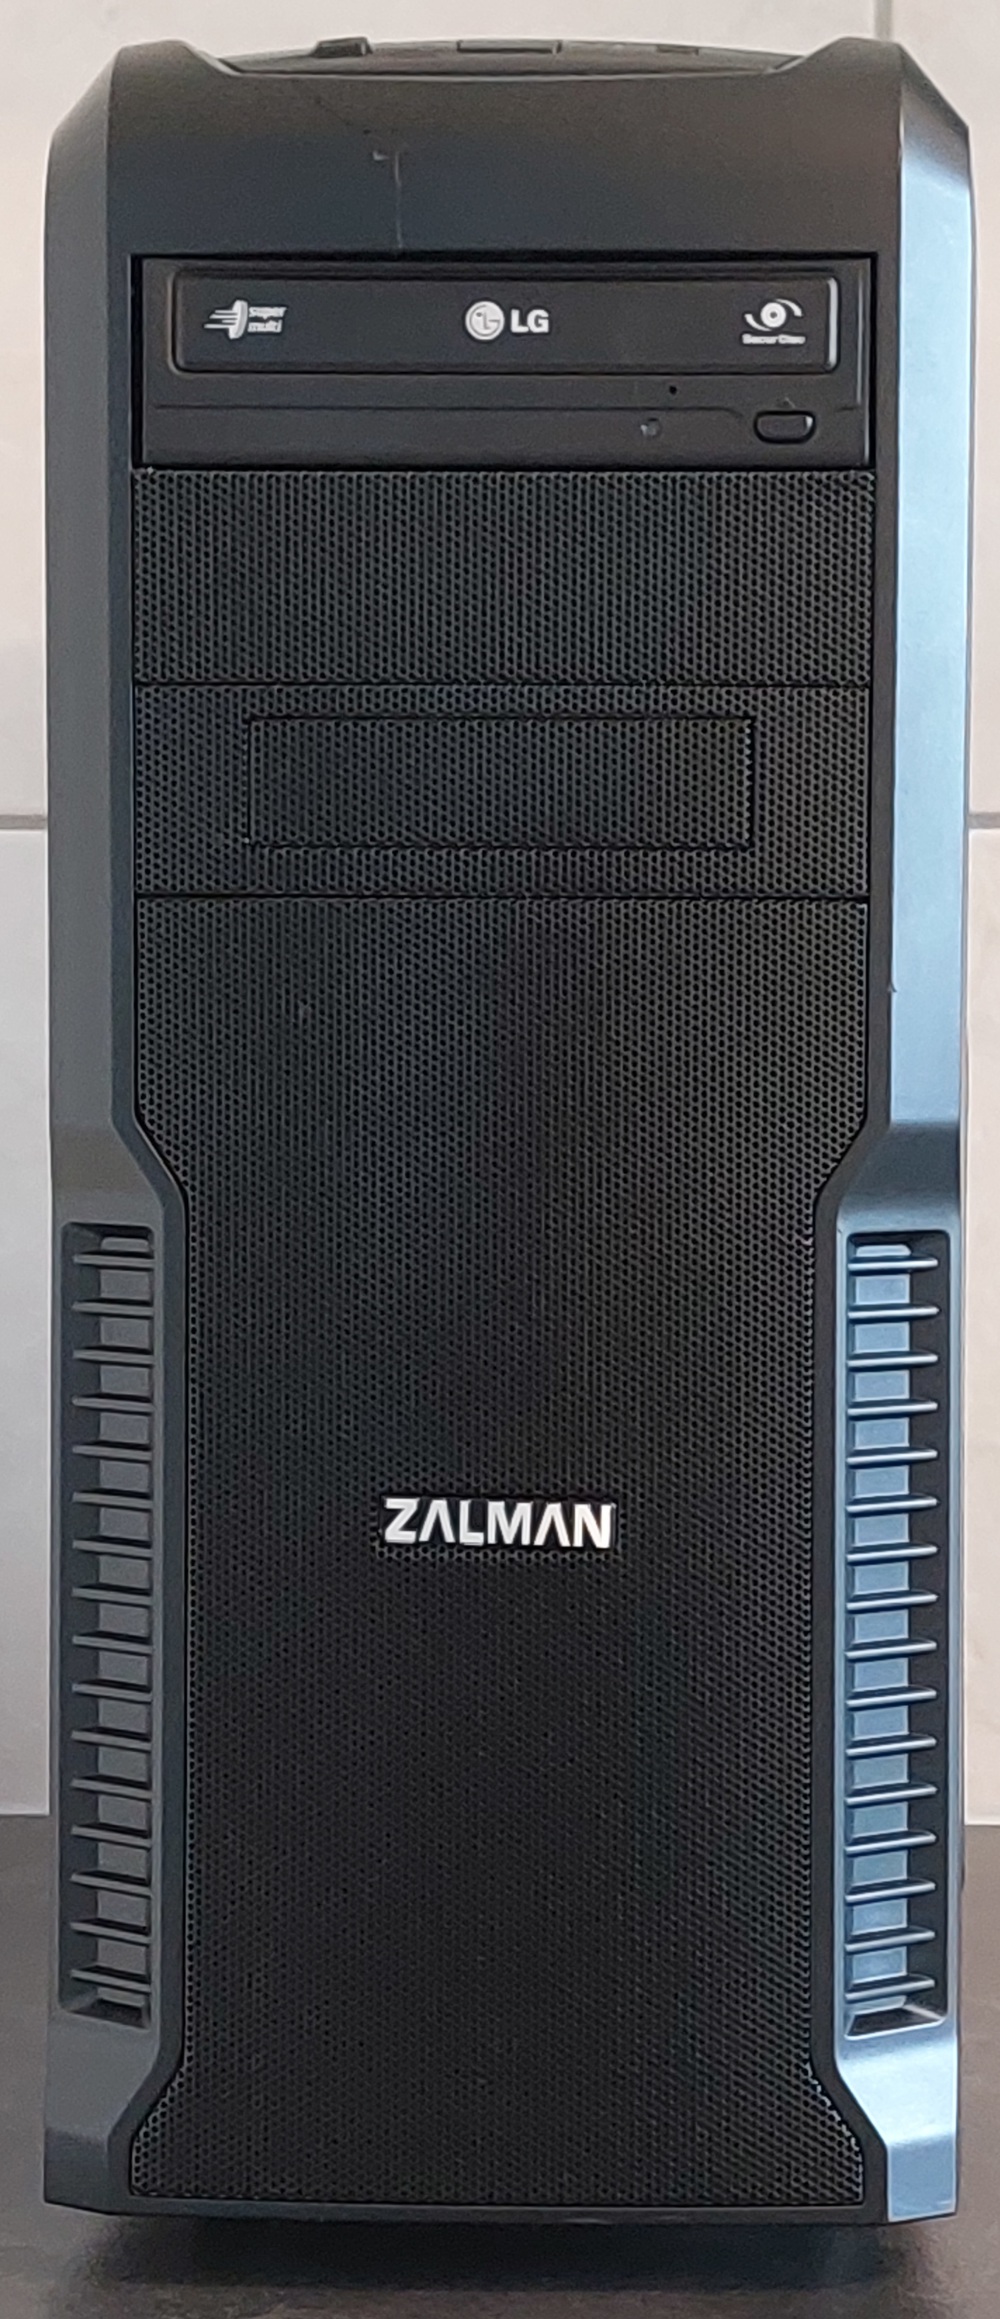 Zalman GamerPC Intel Core i7-4790 32GB RAM 240GB SSD 1TB HDD+Monitor Fujitsu 22"+Maus und Tastatur 